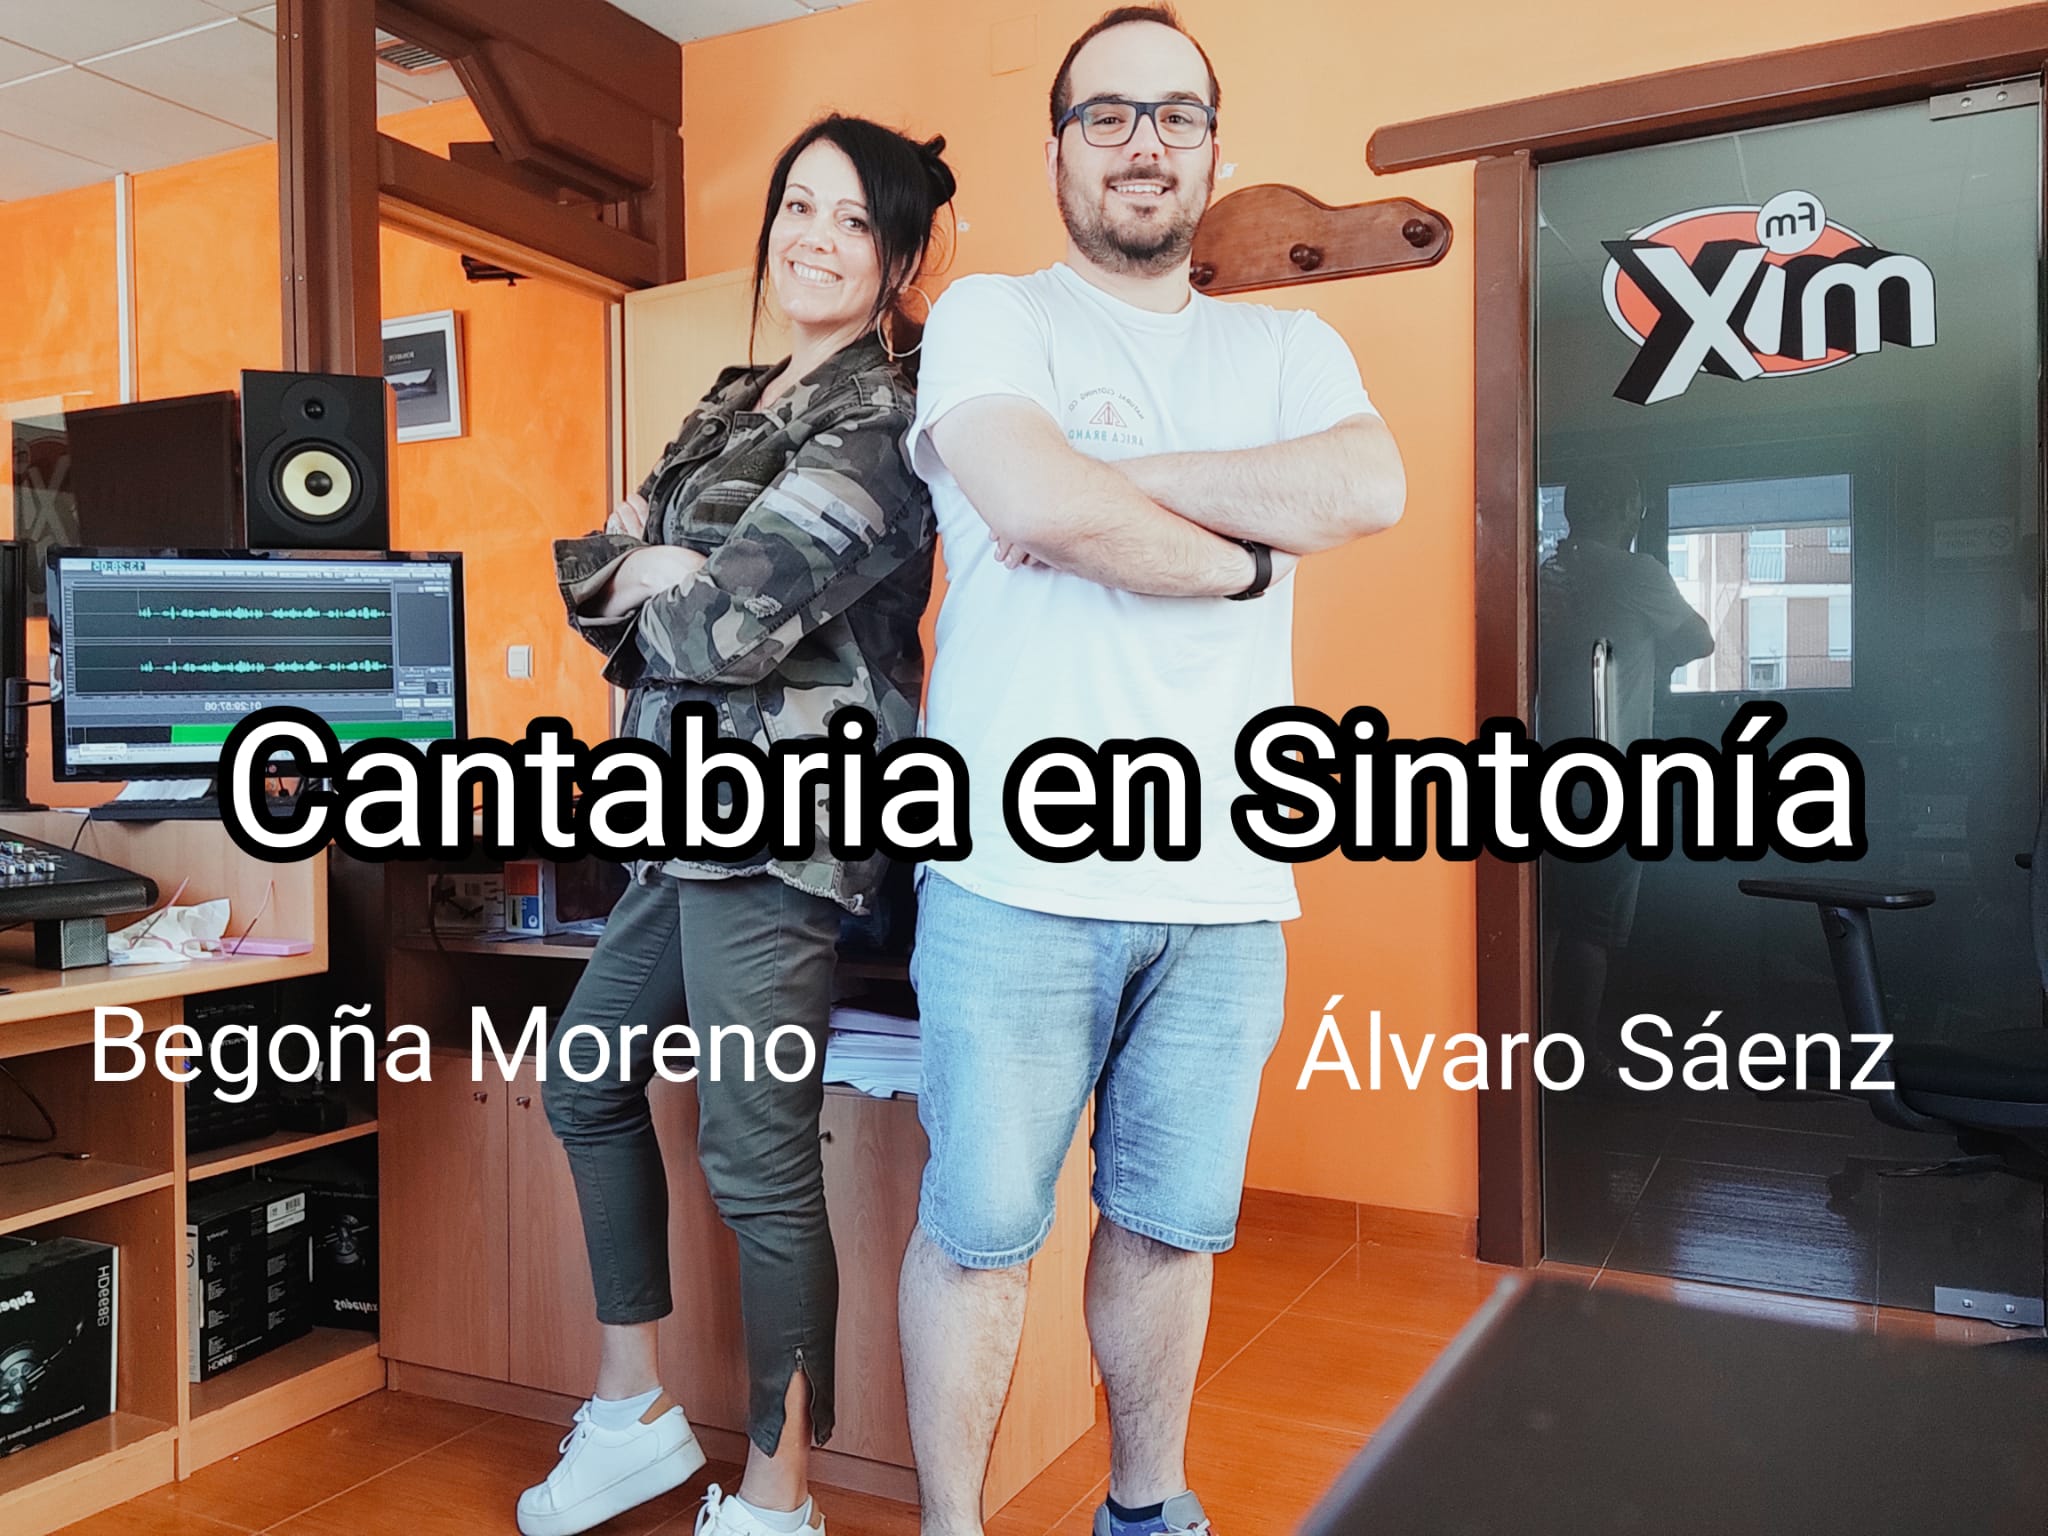 Cantabria en Sintonía en Mix FM. Lunes 09-05-2022